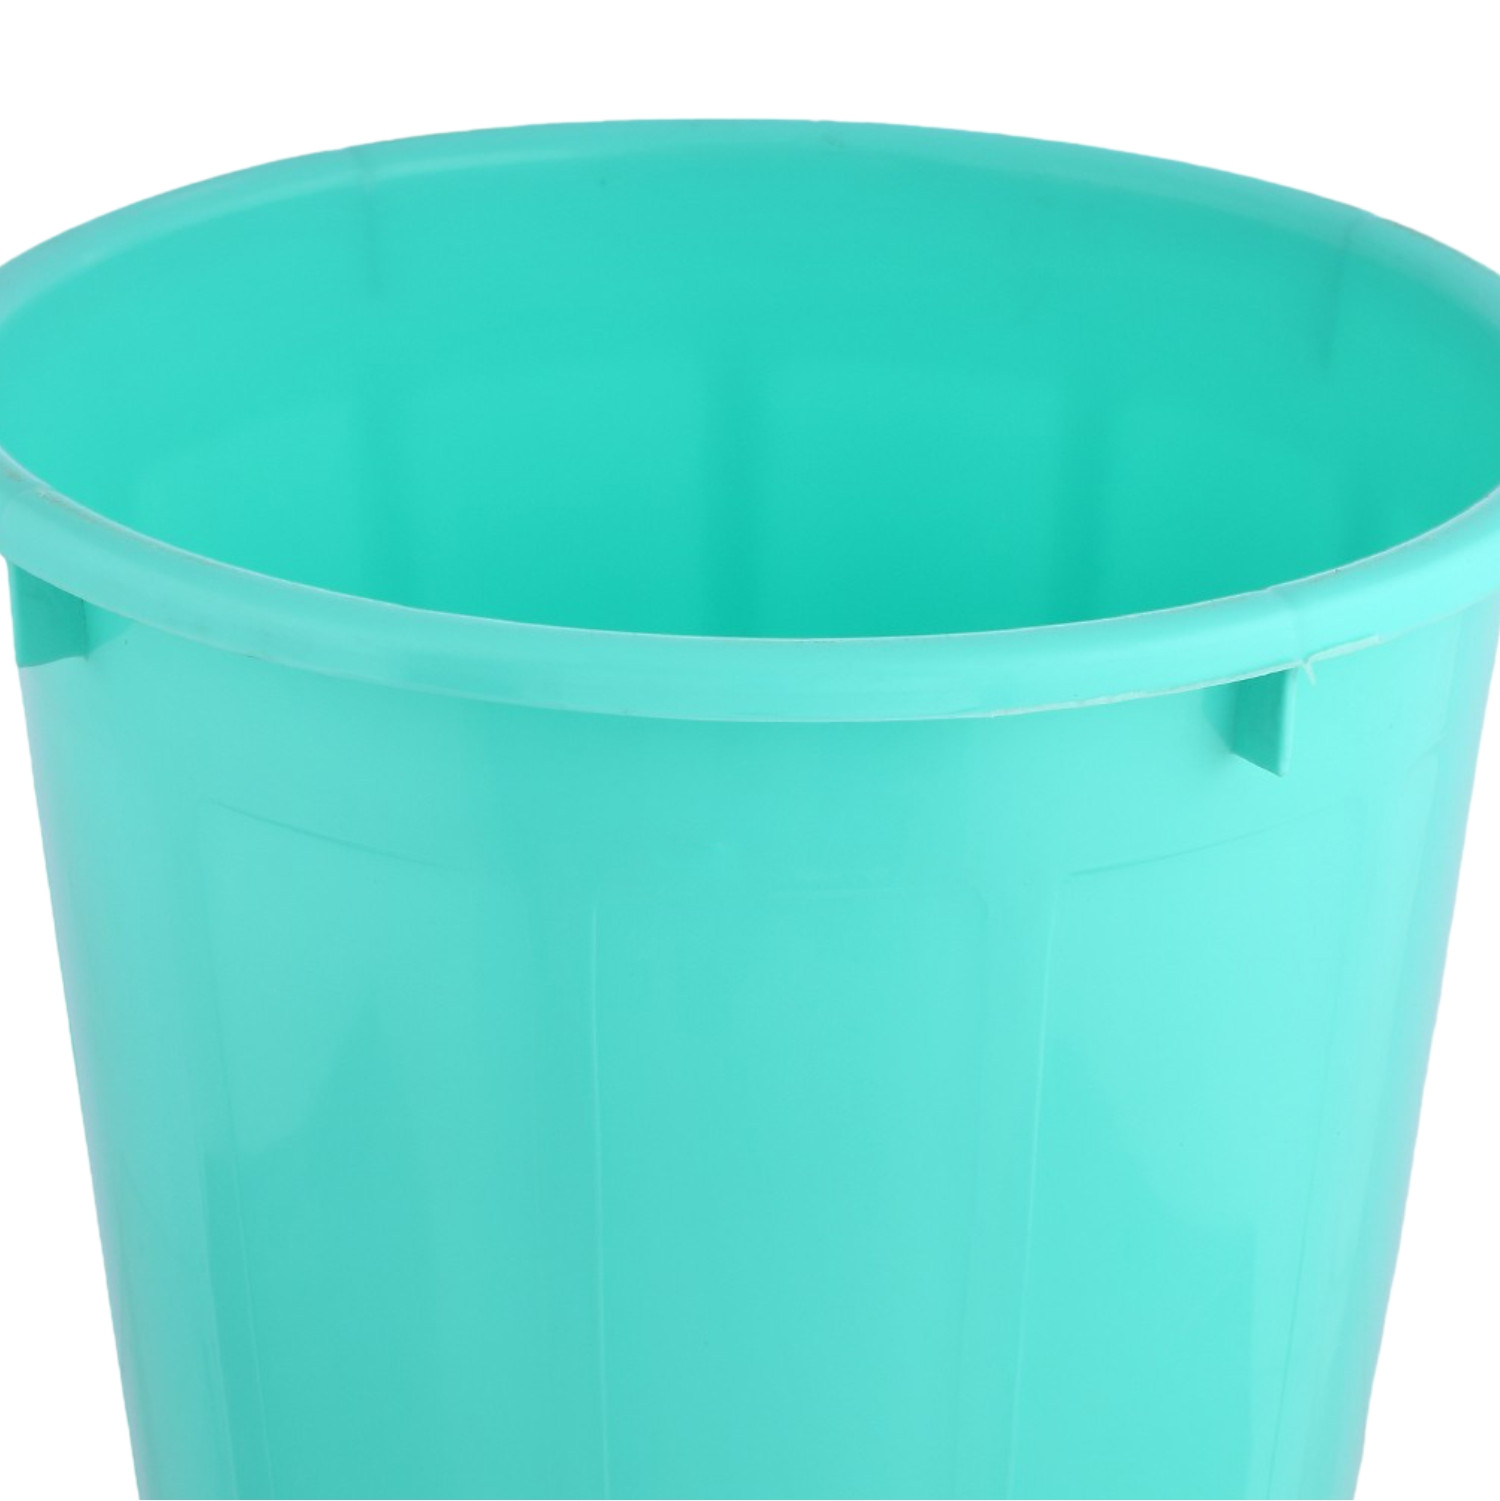 Kuber Industries Dustbin | Open Dustbin | Plastic Garbage Dustbin | Dustbin for Kitchen | Dustbin for Bathroom | Office Dustbin | Plain Sada Dustbin | 7 LTR | Pack of 2 | Multi